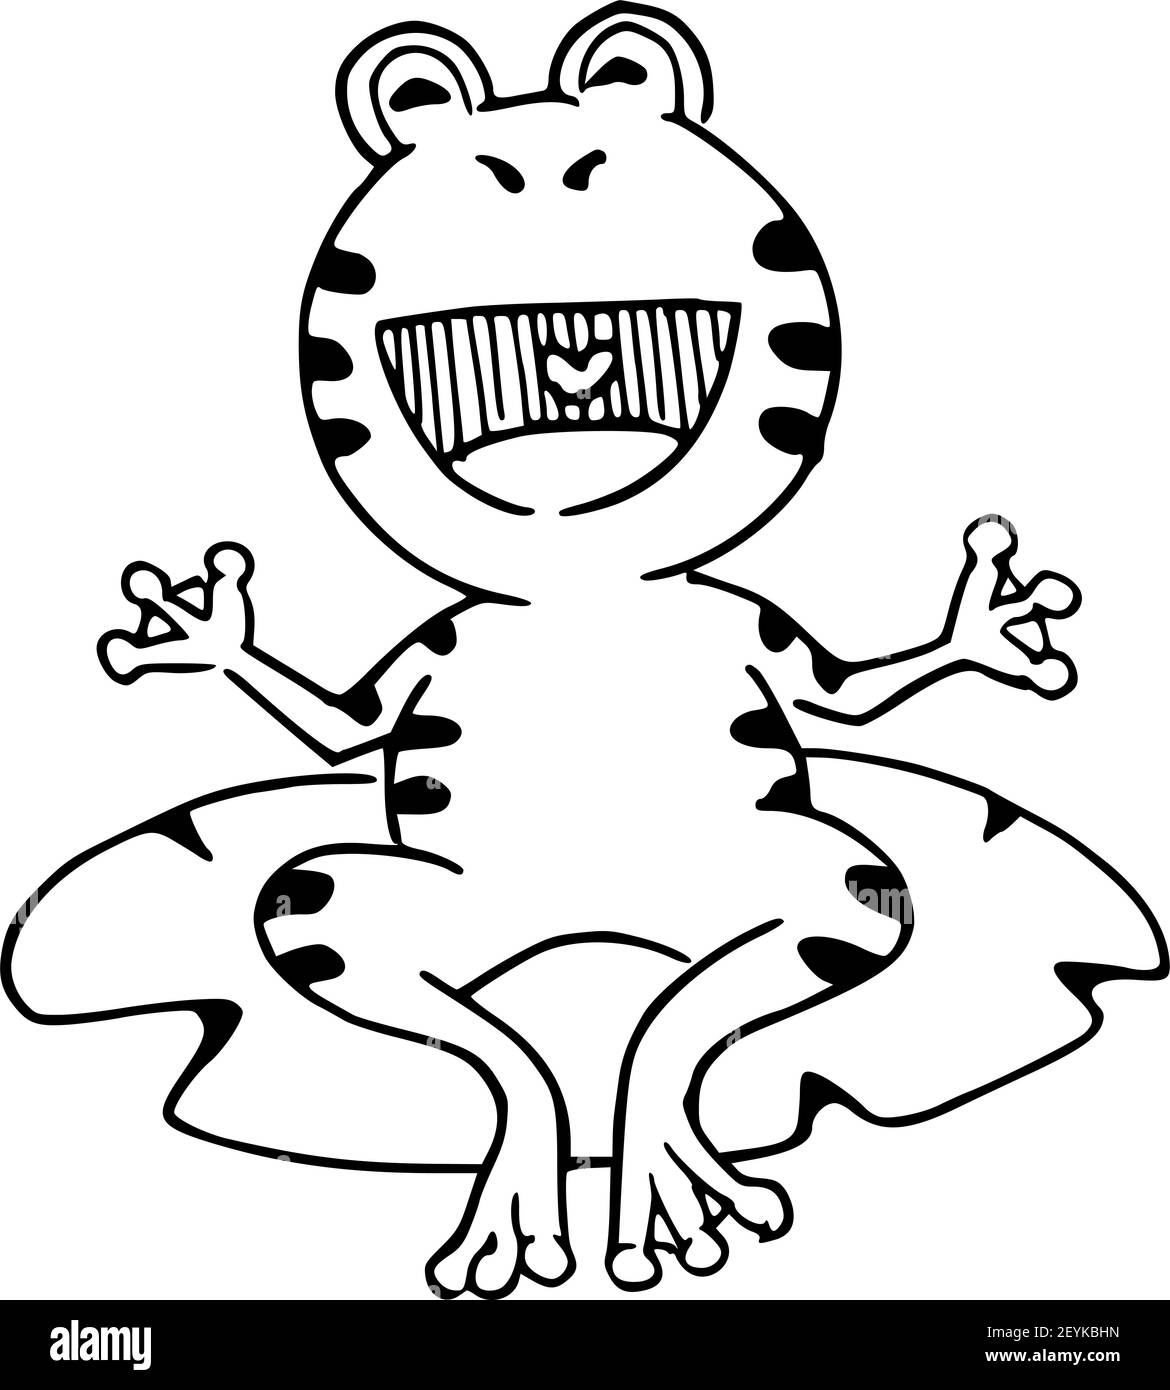 vektor Cartoon Frosch lachen schwarz und weiß Stockfotografie - Alamy